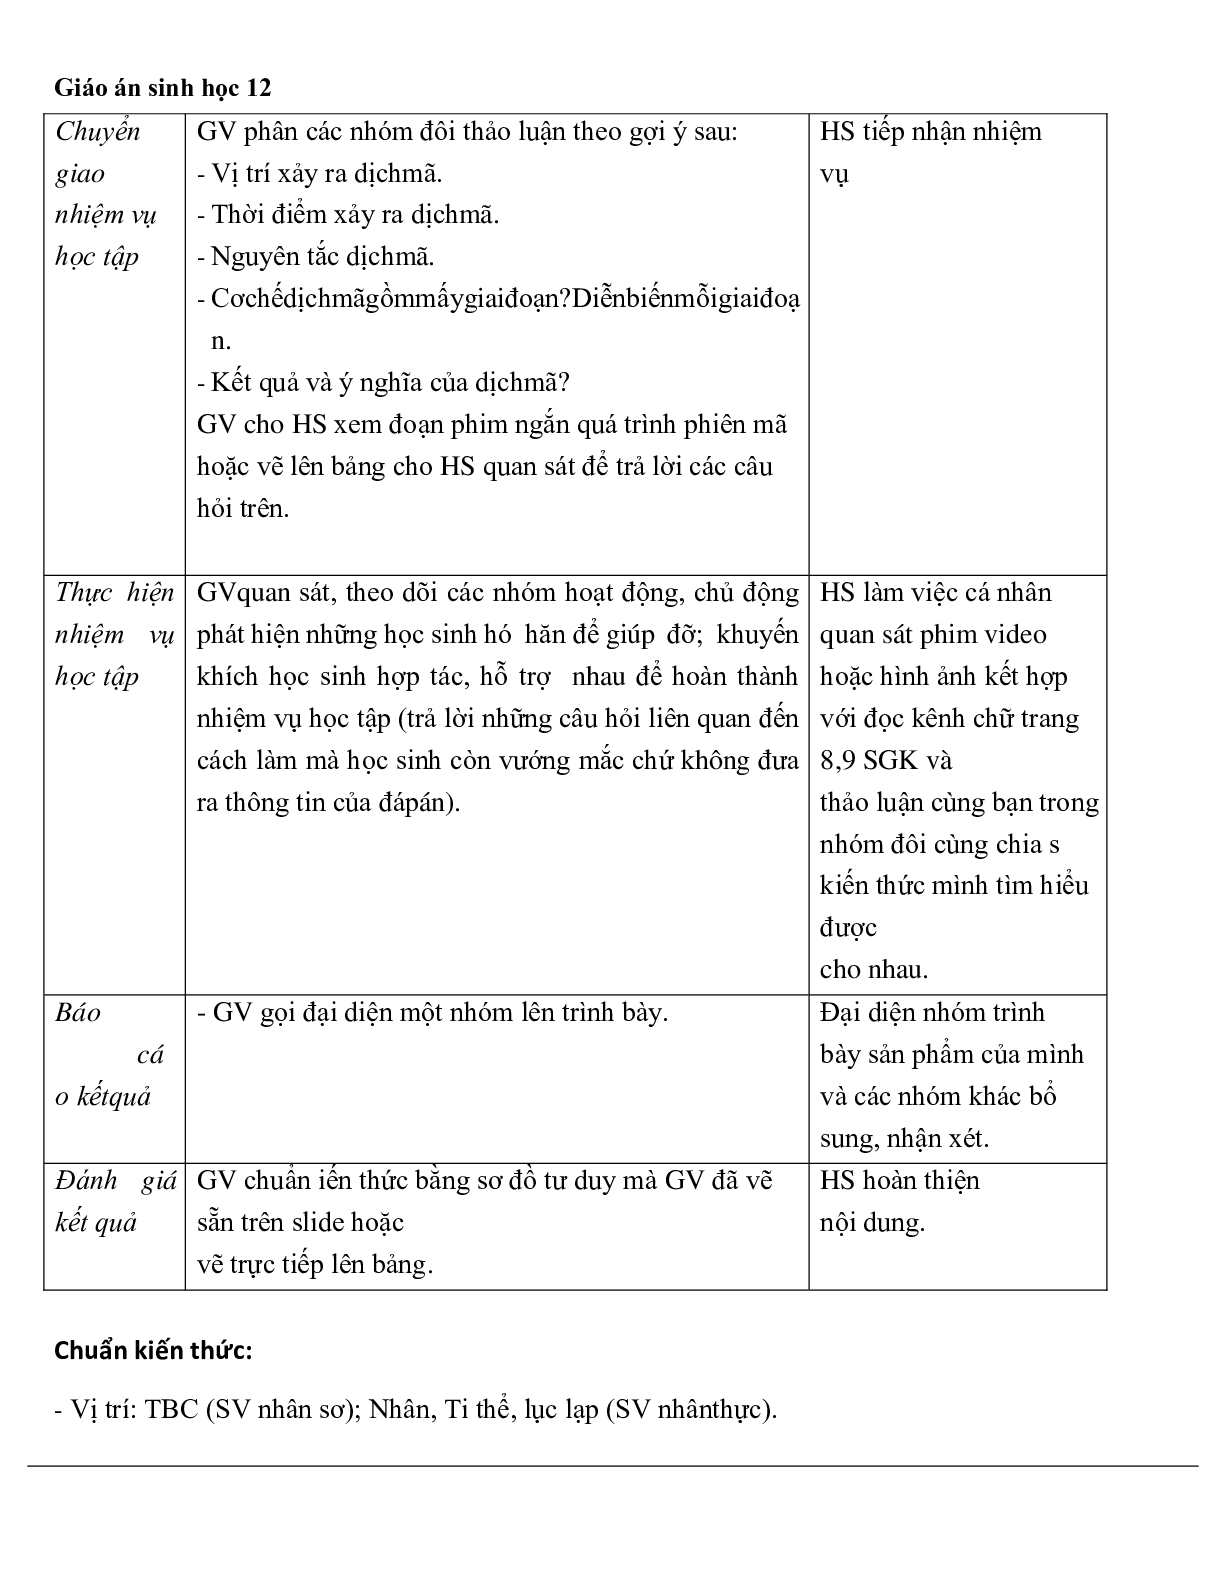 Giáo án Sinh học 12 Bài 2: Phiên mã và dịch mã mới nhất (trang 6)